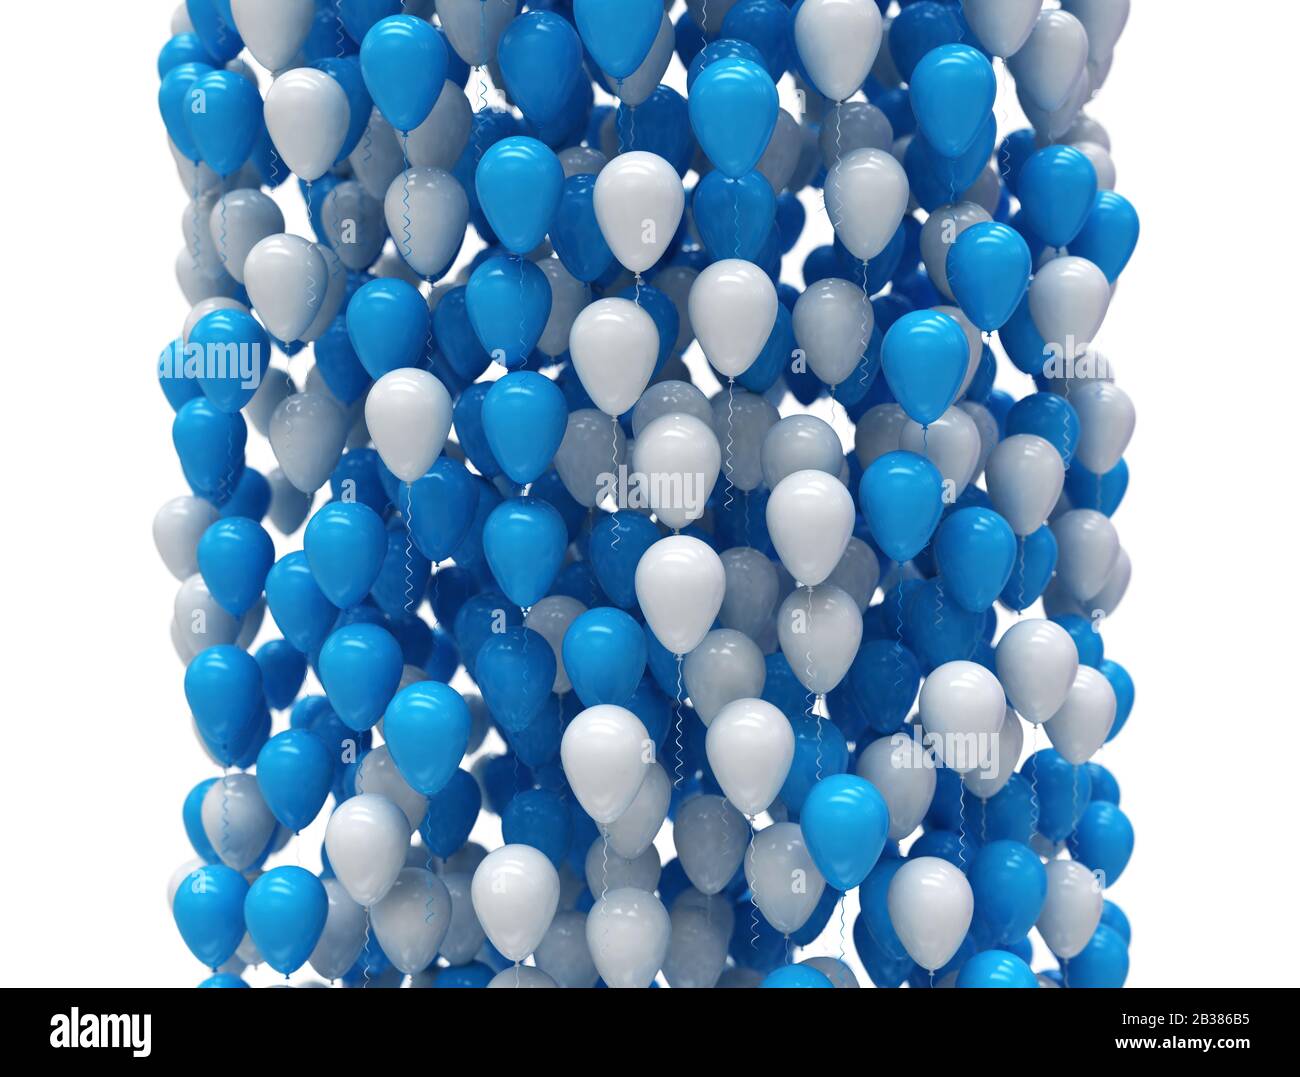 Blau-weiße Partyballons, die in einer großen Gruppe aufsteigen, isoliert auf weißem Hintergrund. 3D-Abbildung Stockfoto